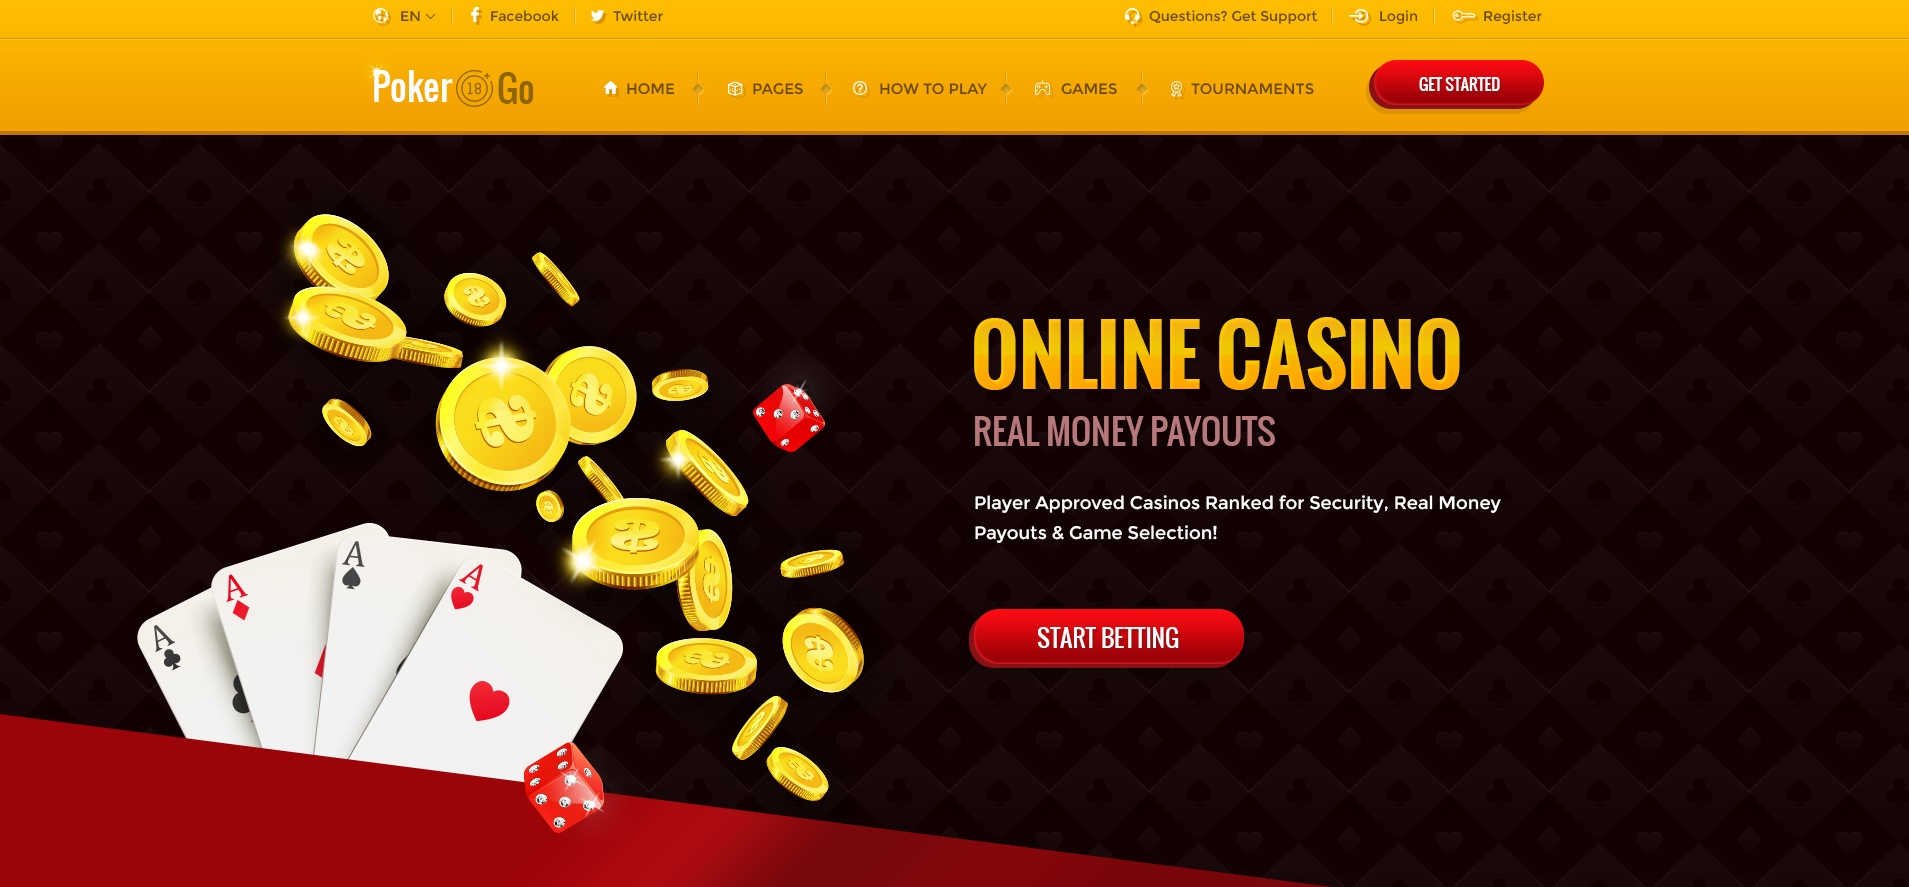 Freemium Theme For Casino Website 5